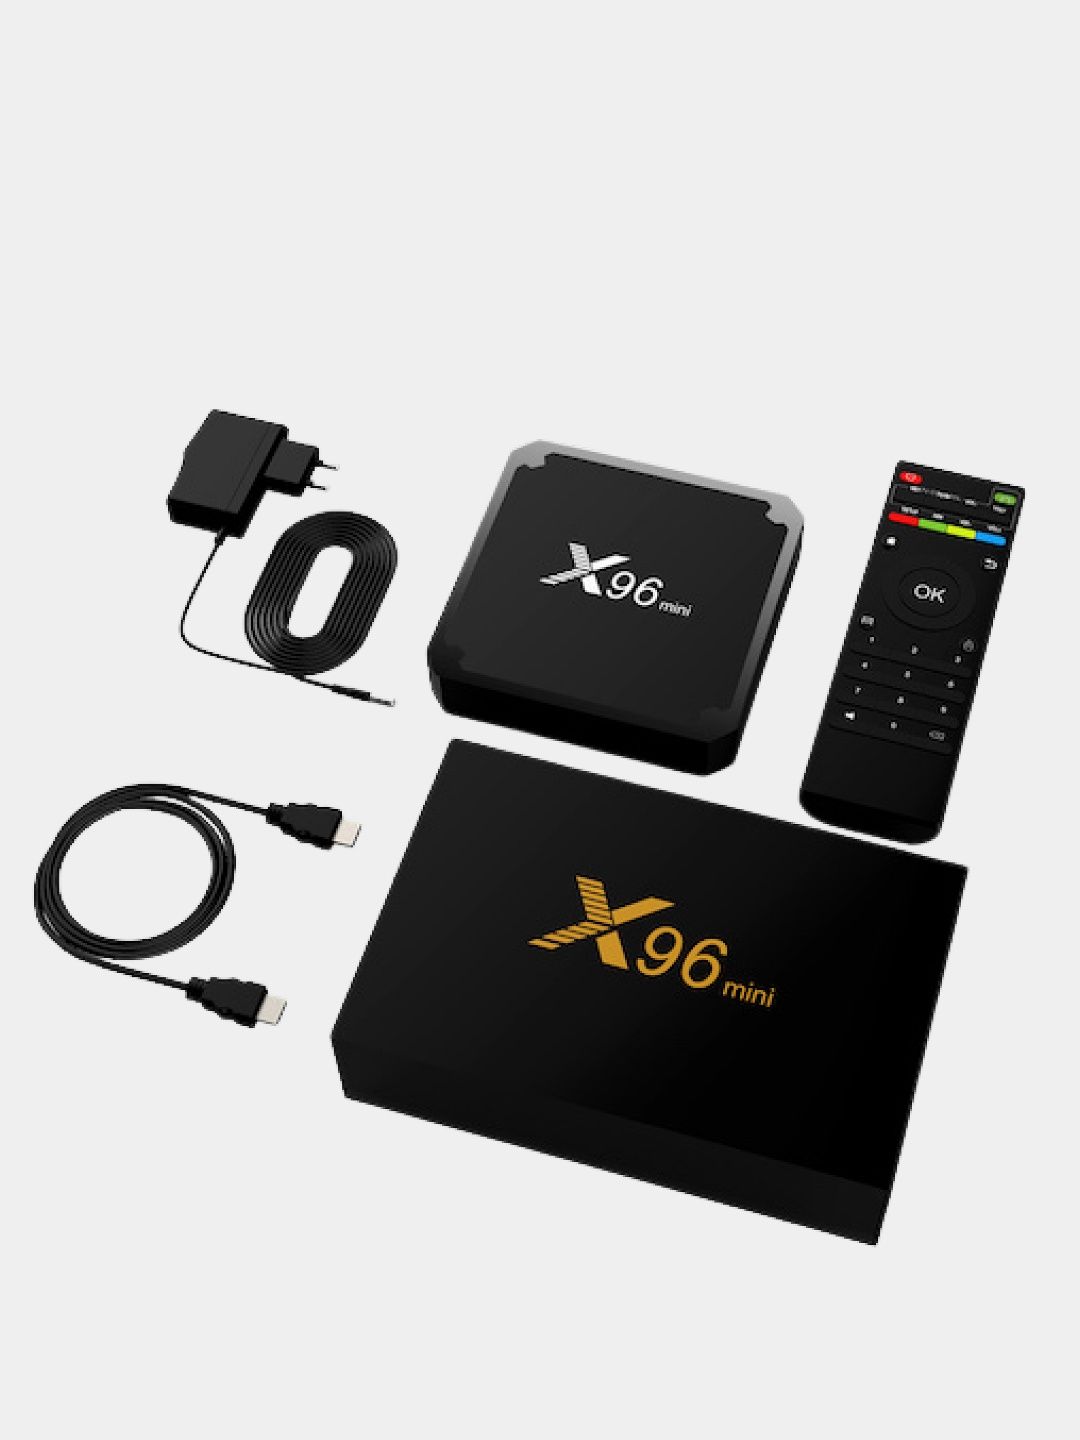 Smart tv BOX96 bilan oddiy televezor smartga aylanadi